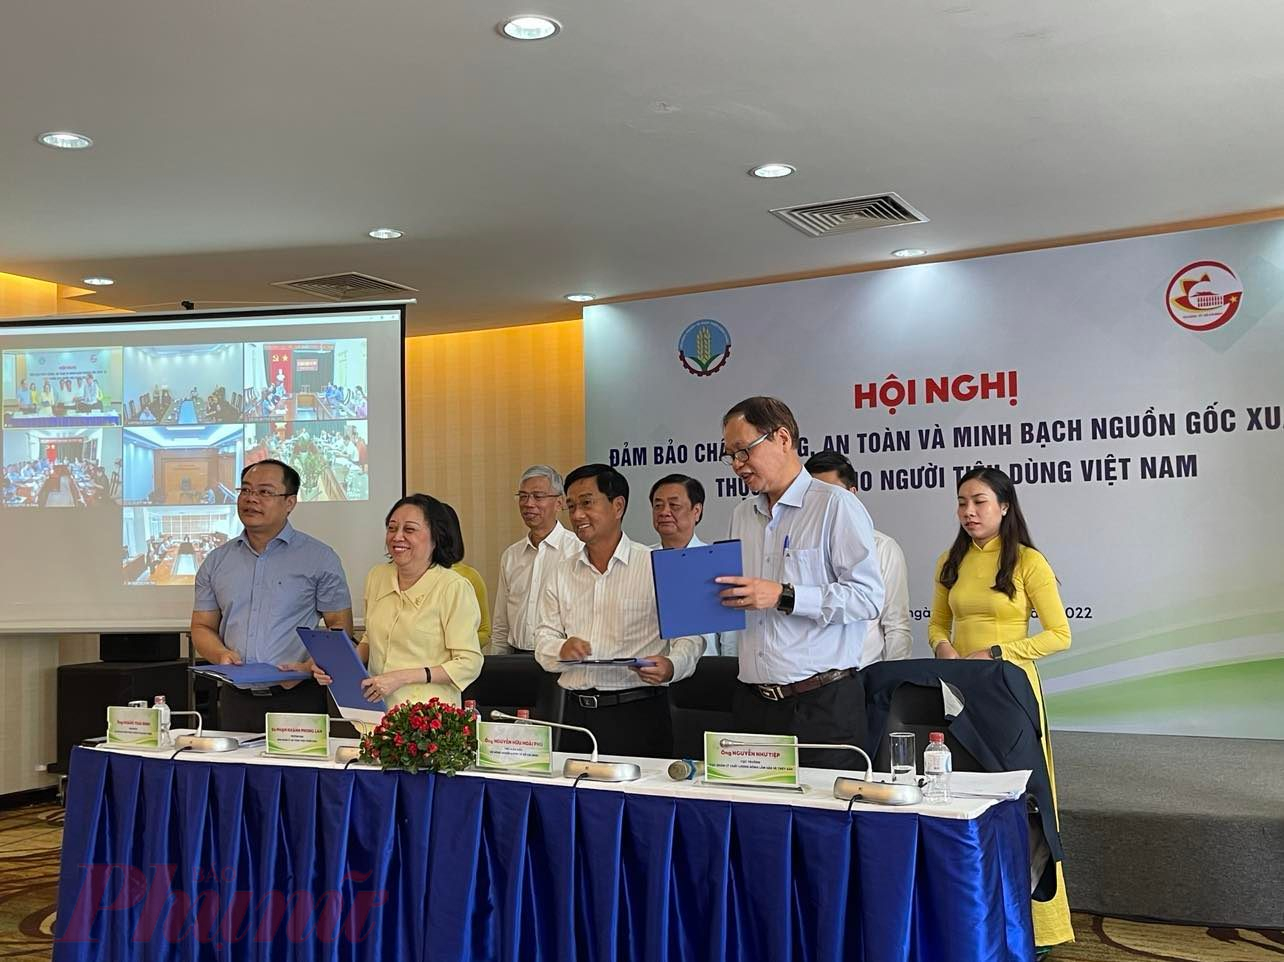 Các ban ngành, hiệp hội ký kết Chương trình hợp tác đẩy mạnh tiêu thụ nông sản “TP chất lượng, an toàn và minh bạch nguồn gốc xuất xứ TP cho người tiêu dùng Việt Nam - Ành: Nguyễn Cẩm